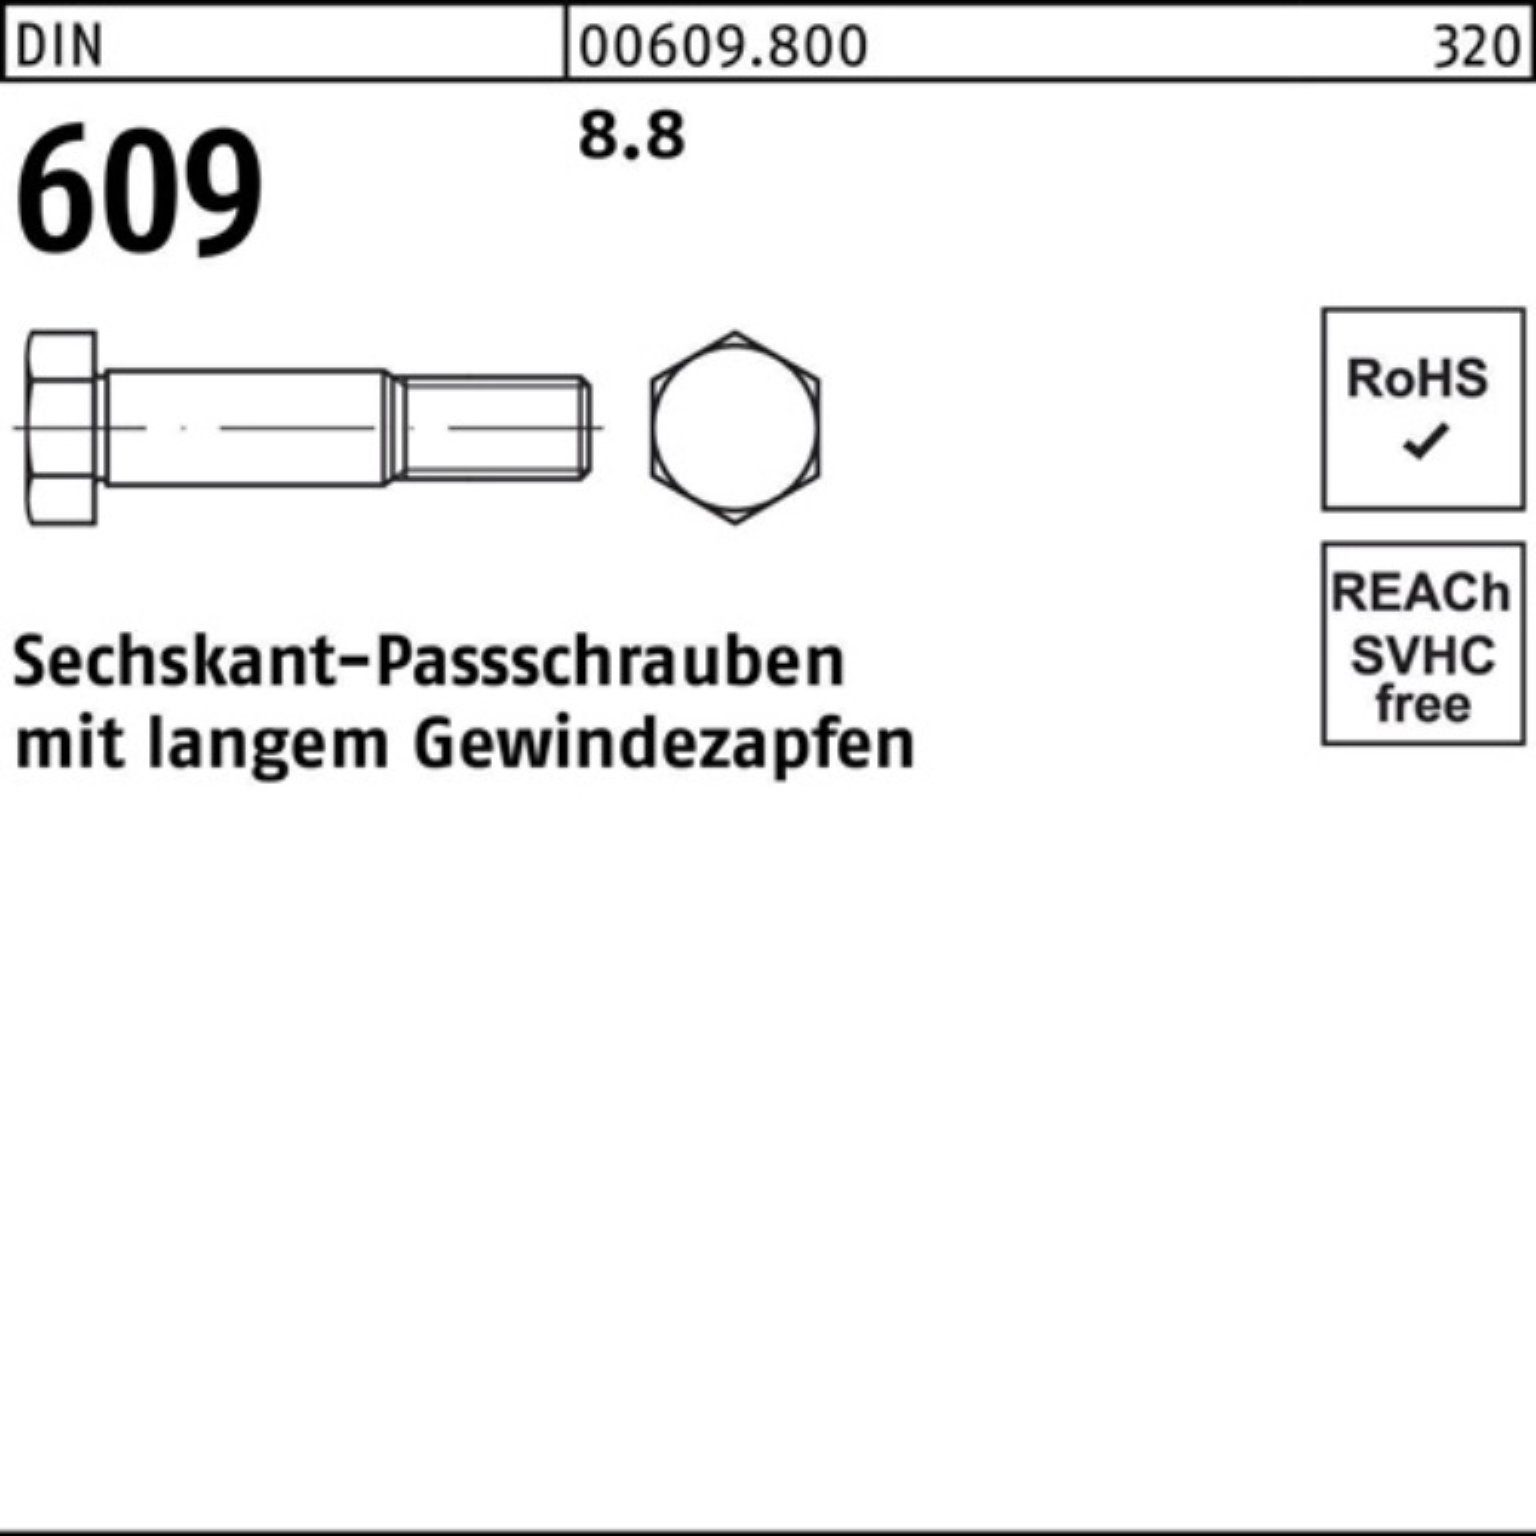 Schraube Reyher Sechskantpassschraube 609 100er Pack DIN langem 100 M36x Gewindezapfen